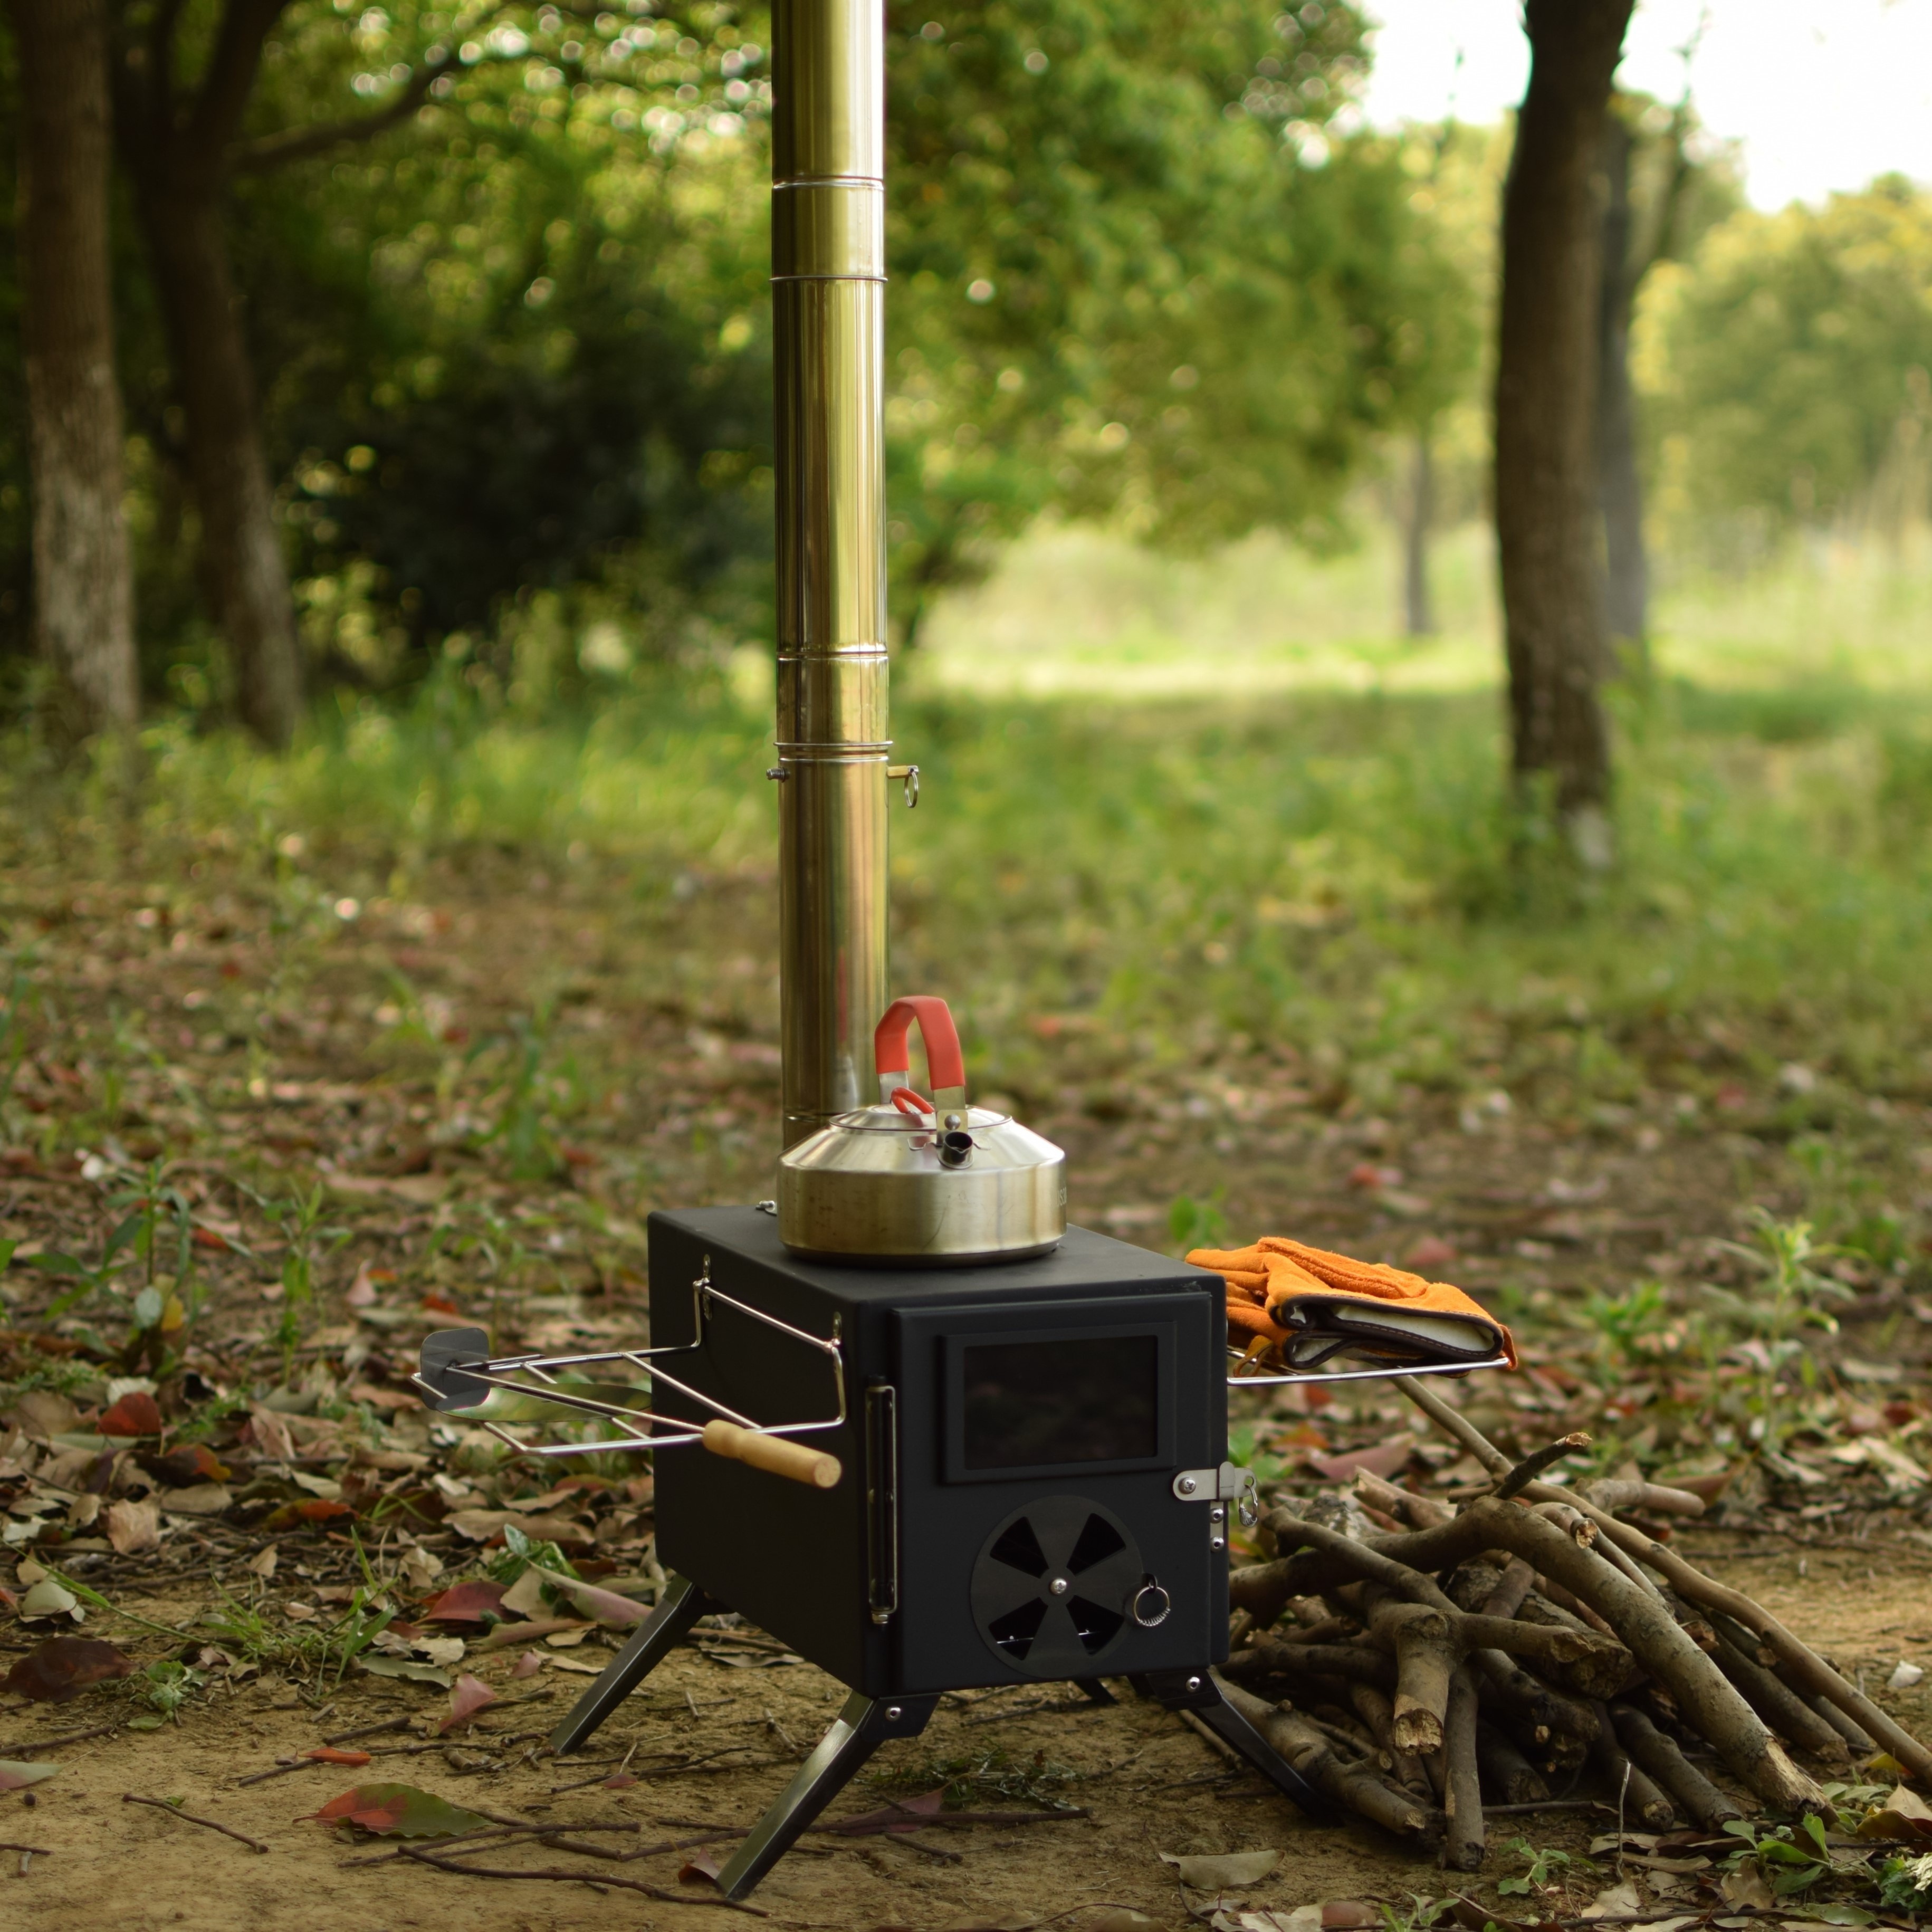 Tente extérieure en acier inoxydable Camping Stove Cooking Grill Détachable  Poêle à bois Portable pour cuisiner Voyage Barbecue Patio